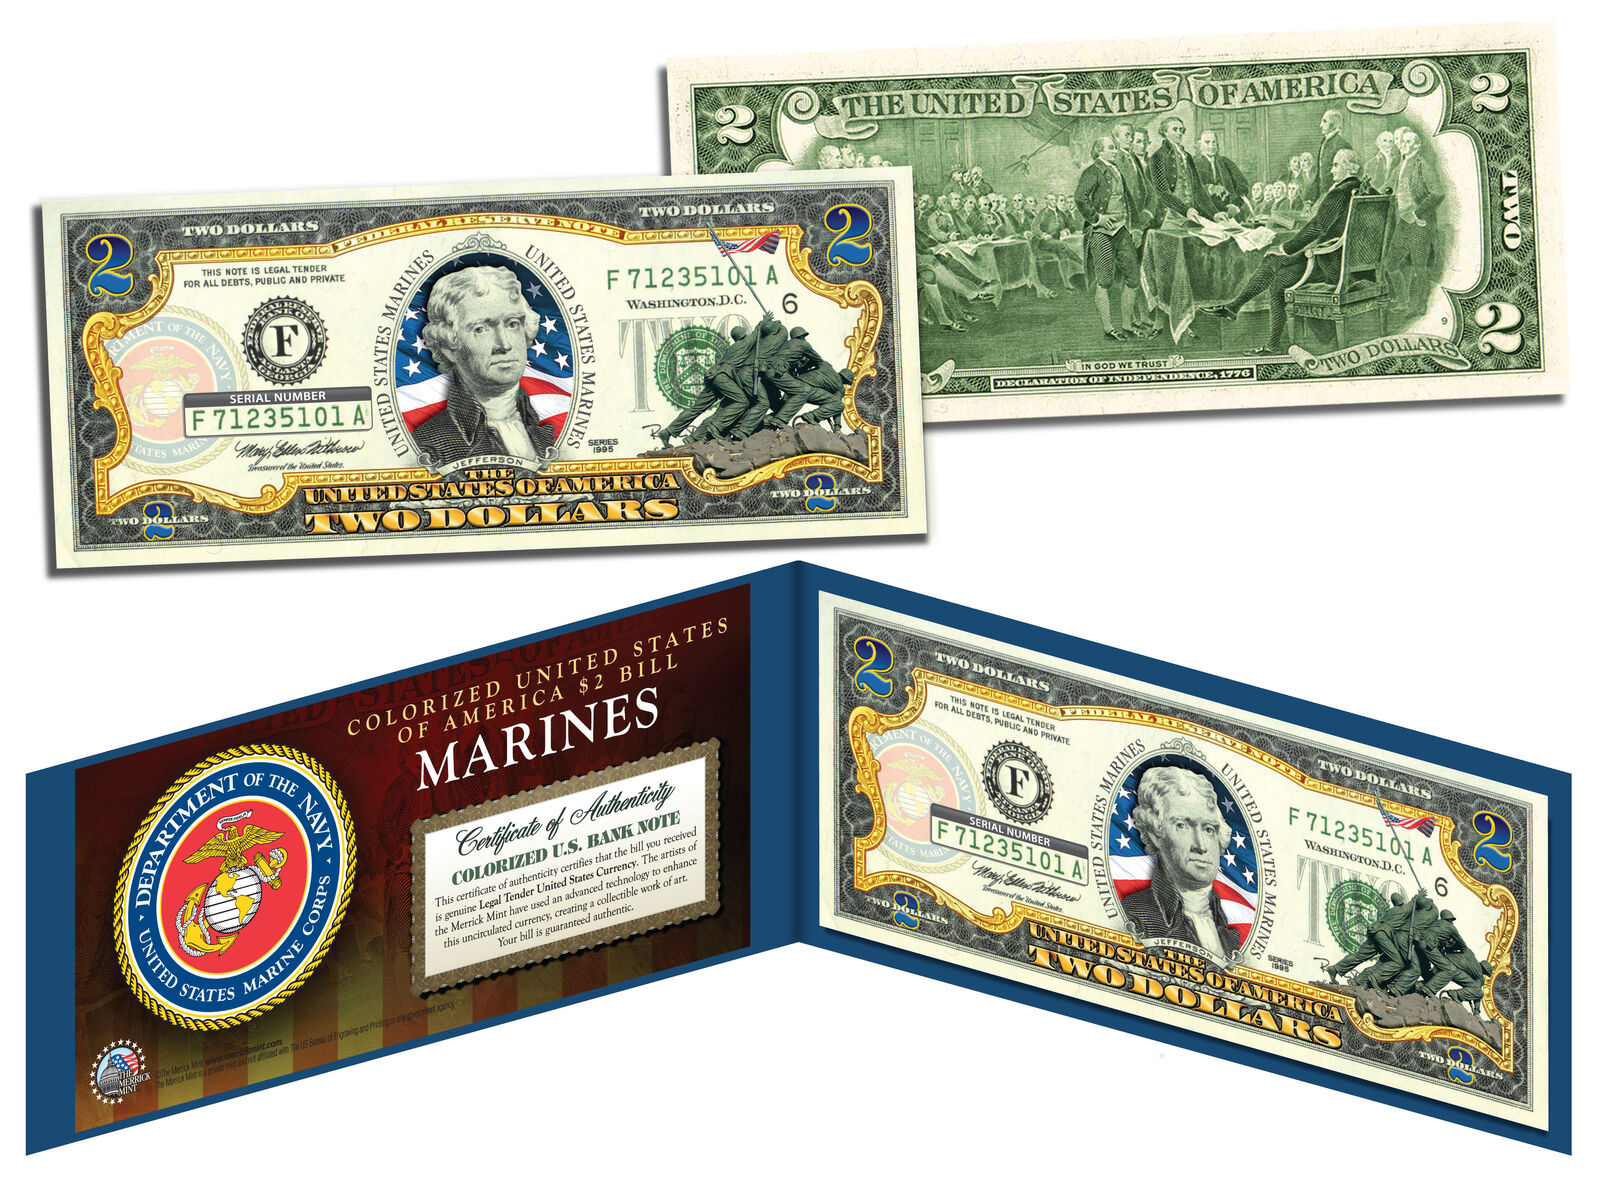 US MARINES WWII Vintage Genuine Legal Tender Colorized U.S. $2 Bill